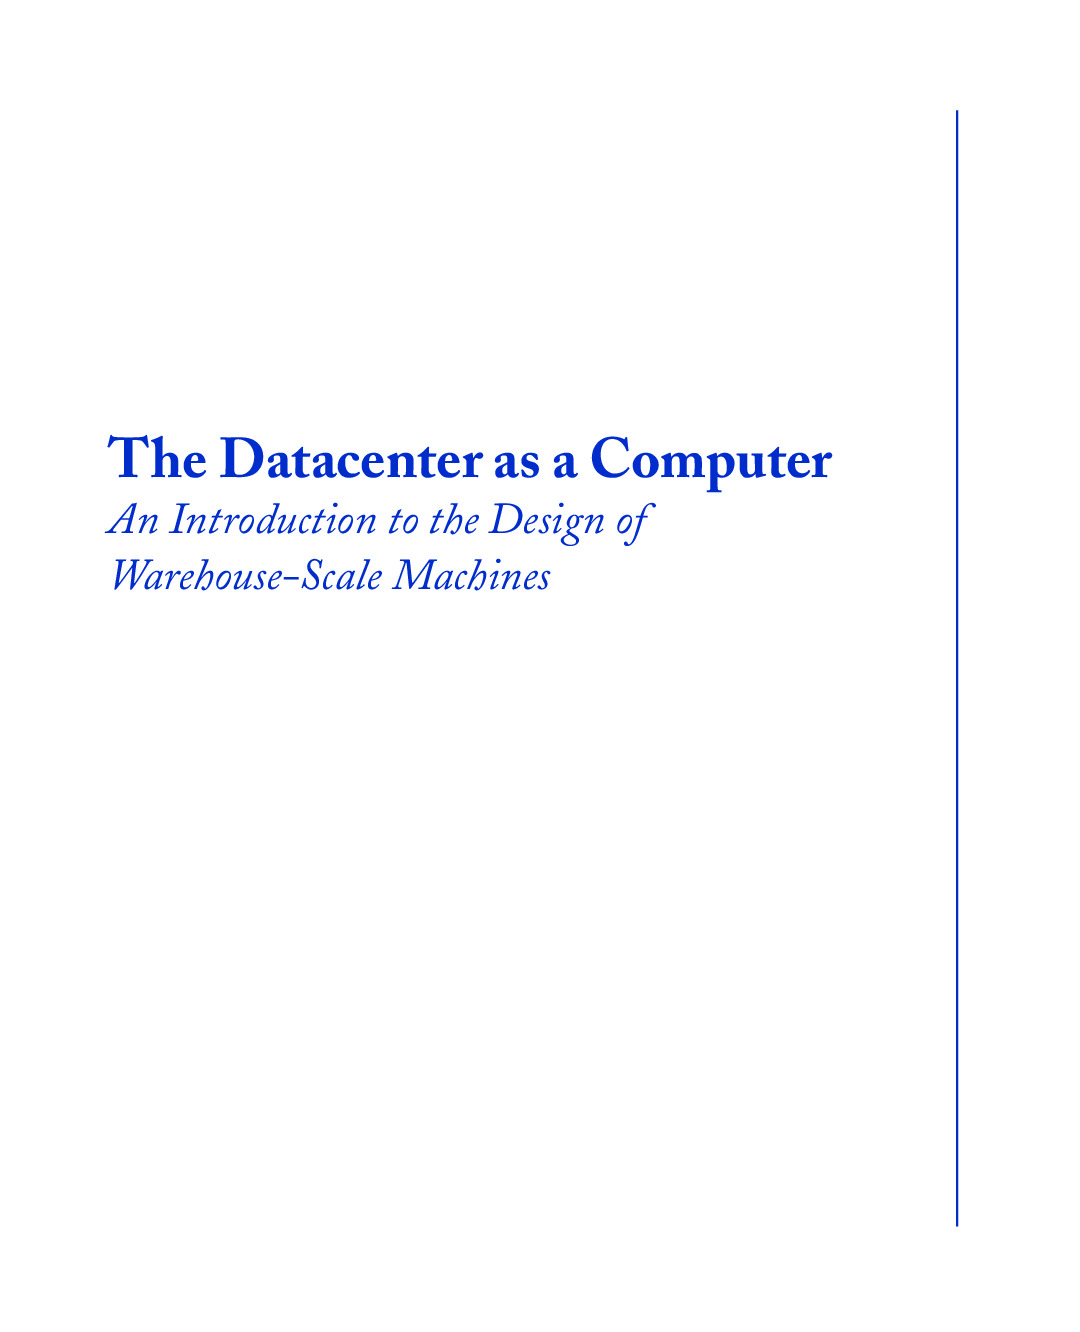 datacenter-as-a-computer